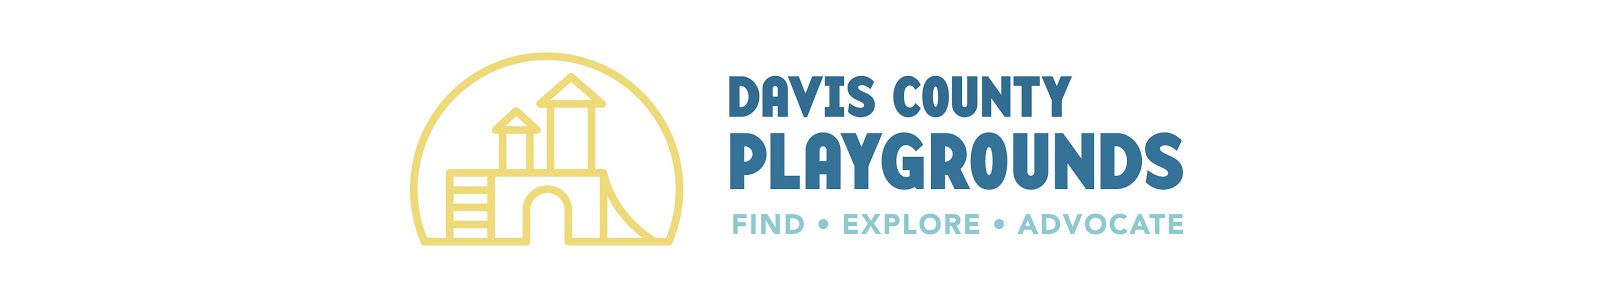 Davis County Utah Playgrounds